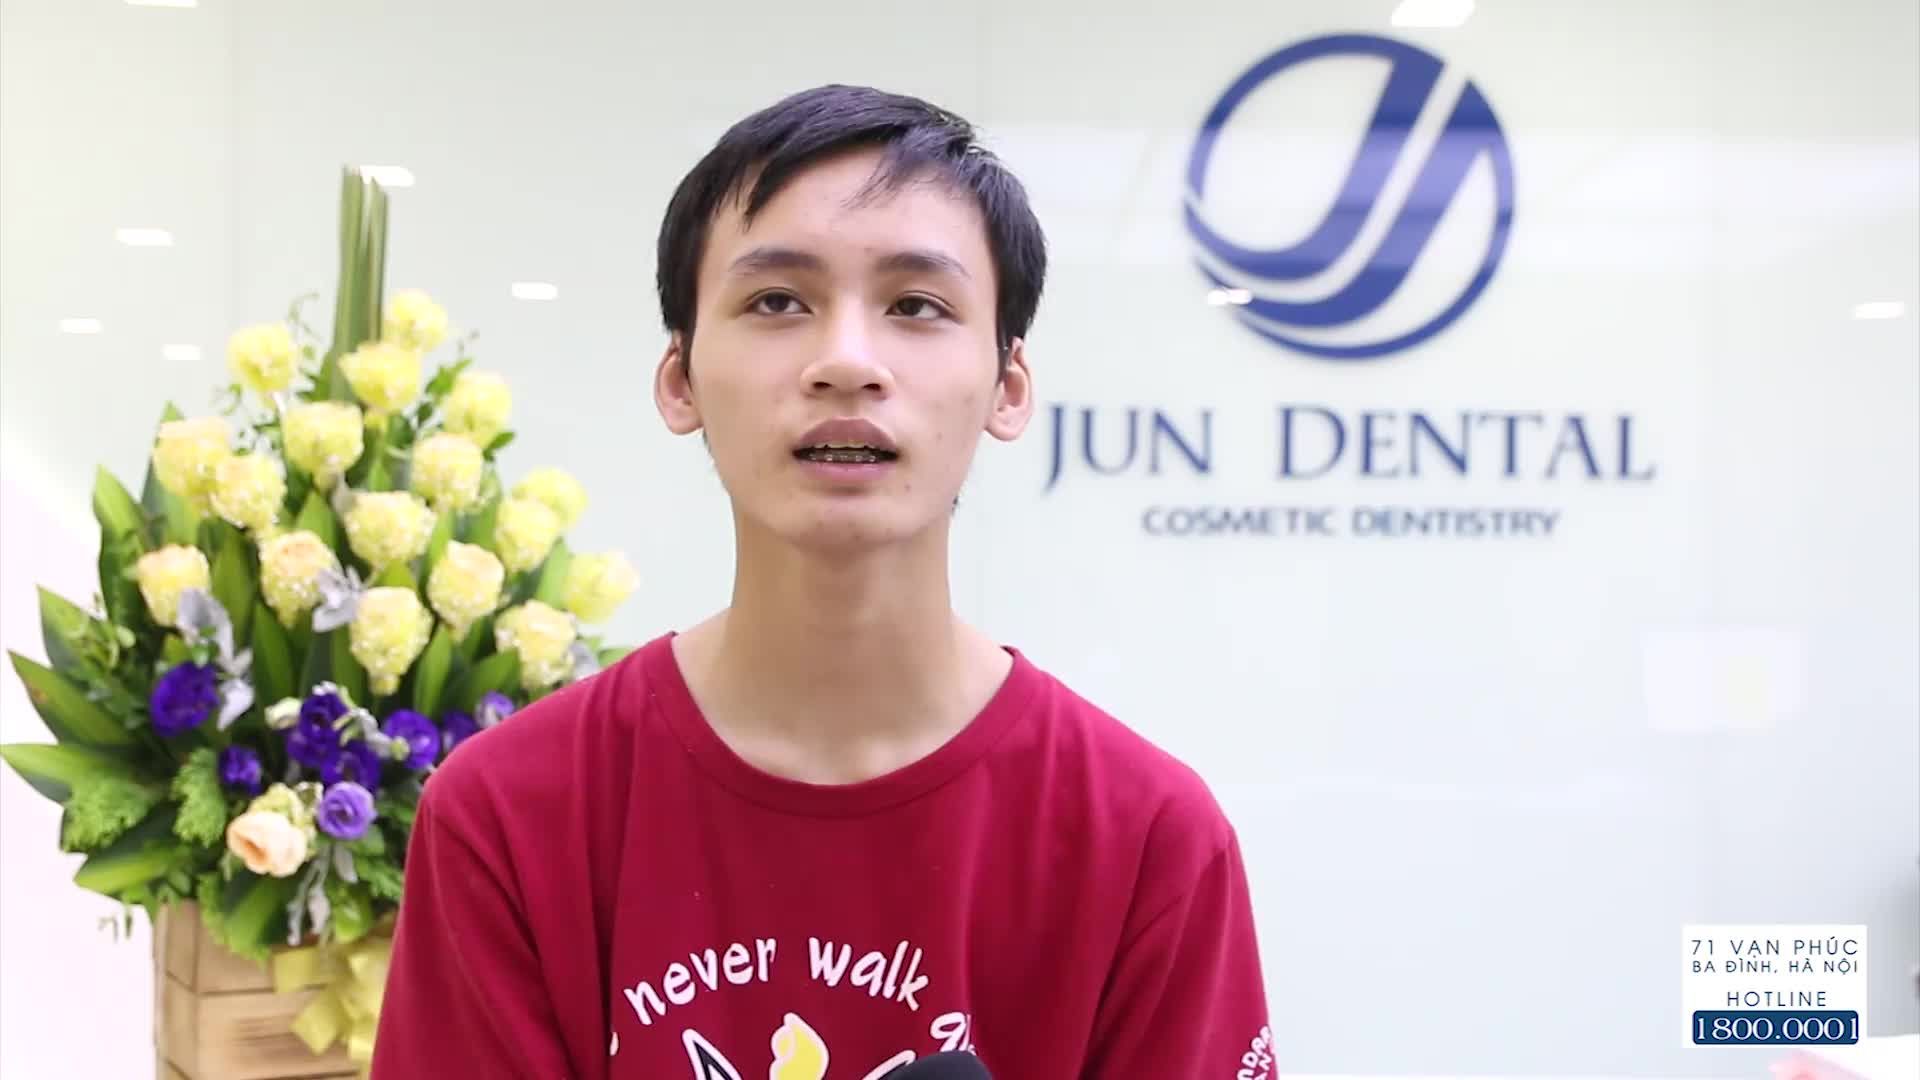 Khách hàng: Lê Sỹ Duy Anh – 16 tuổi, đến từ Hà Nội